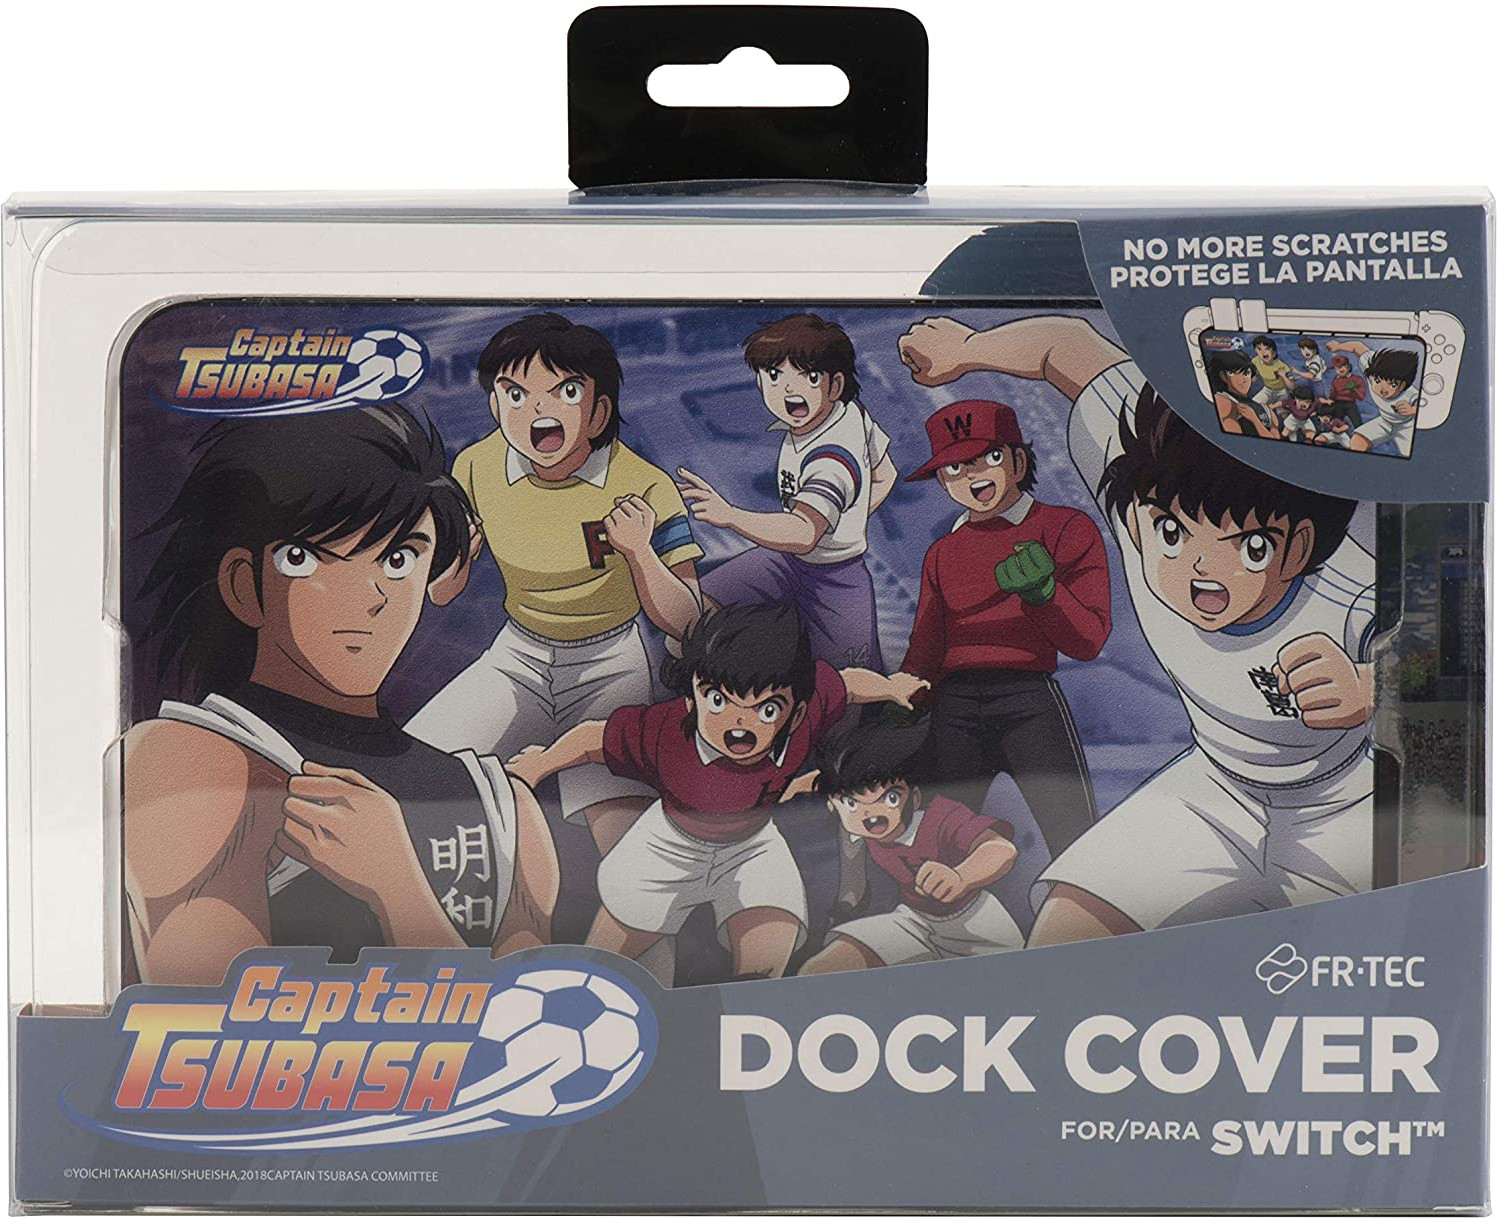 Fr-Tec Captain Tsubasa Dock Cover - Nintendo Switch